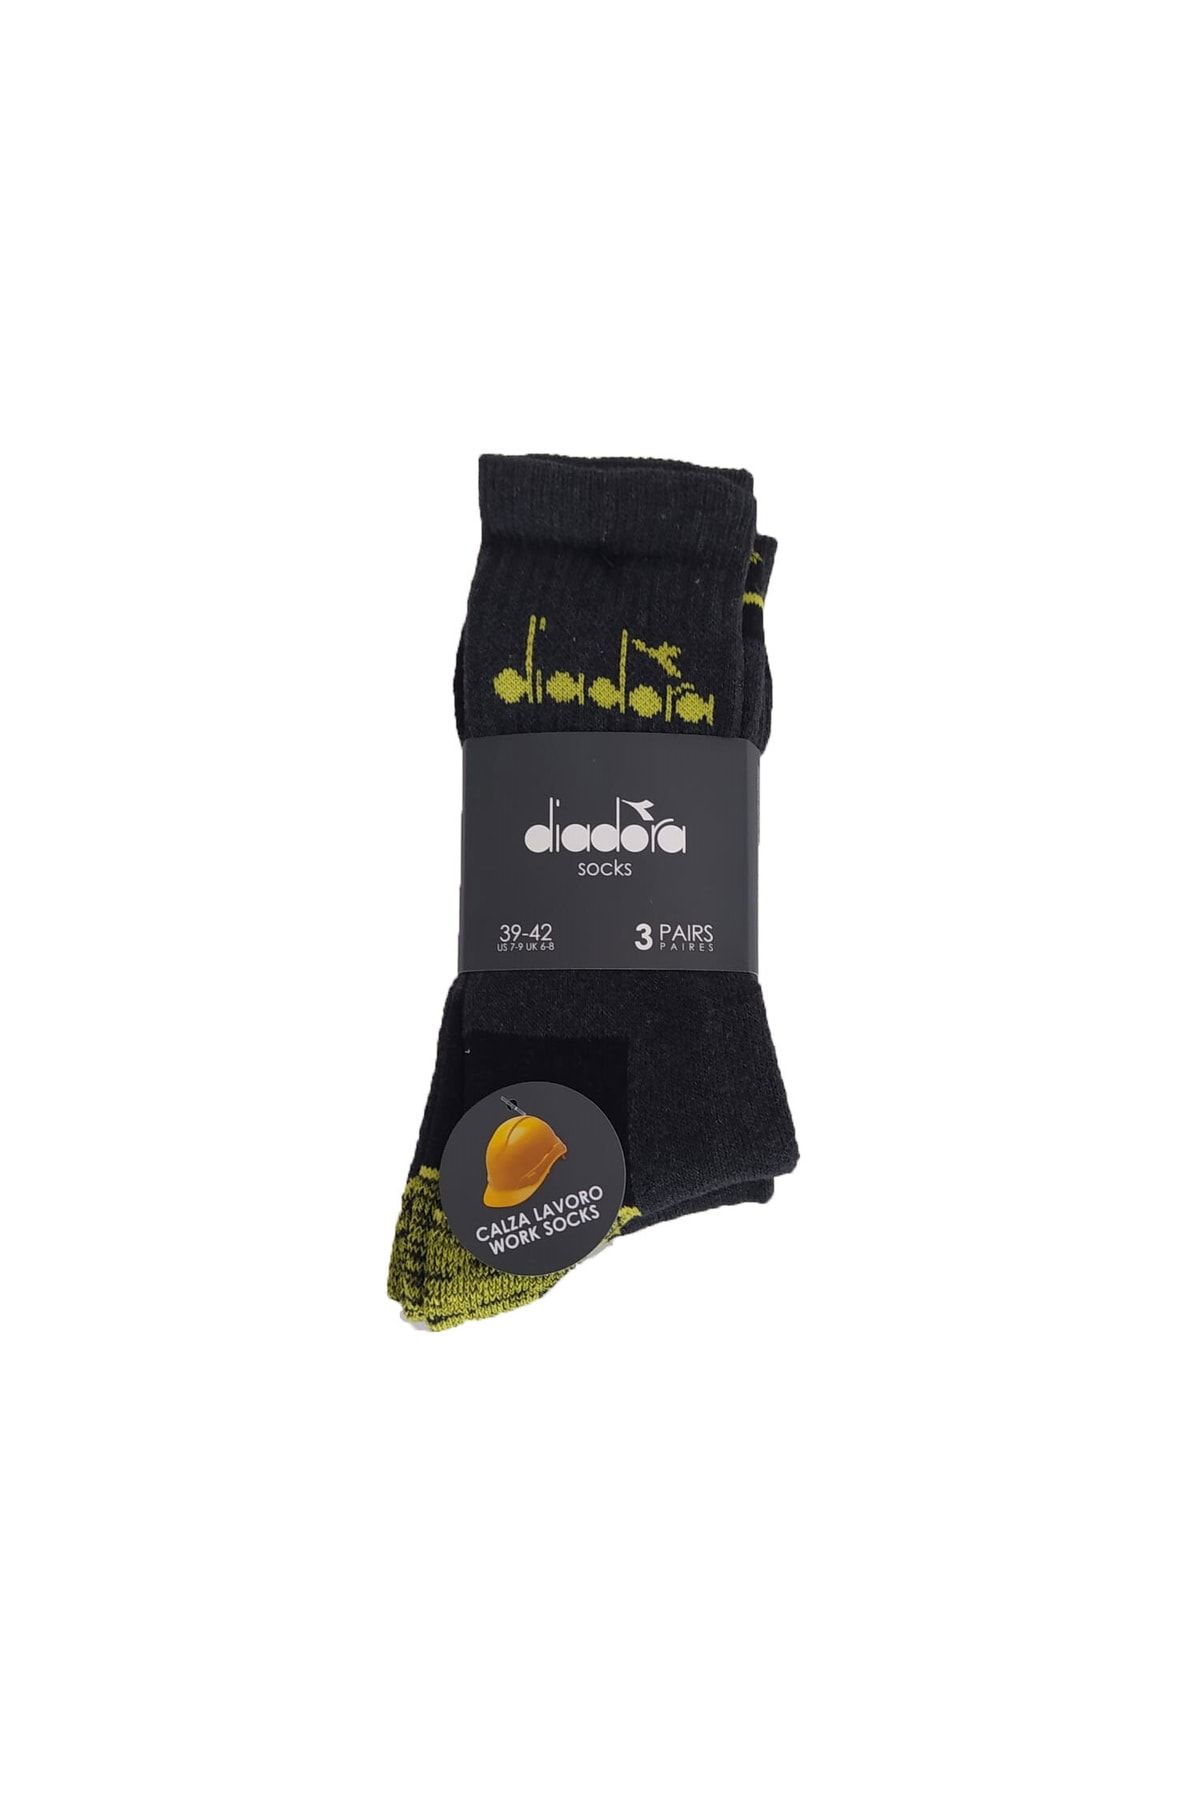 Diadora Prato 3'lü Havlu Çorap Antrasit - Sarı